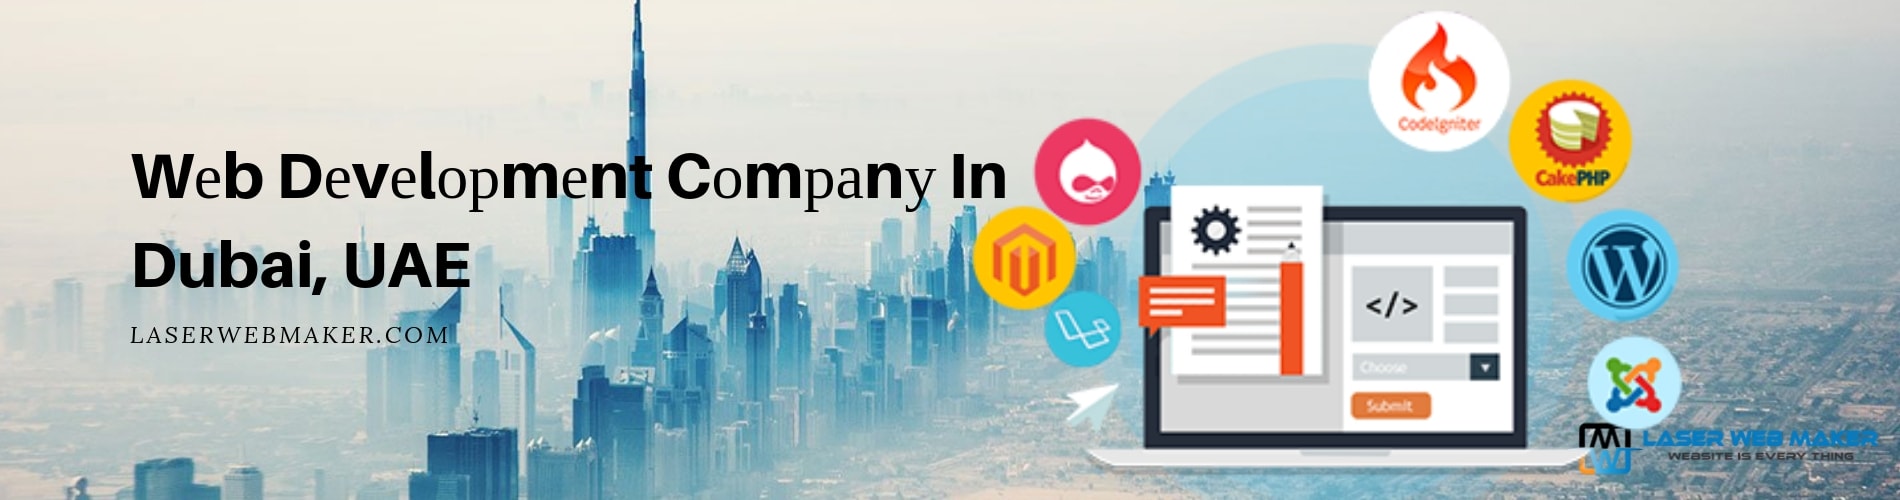 web development company in dubai UAE